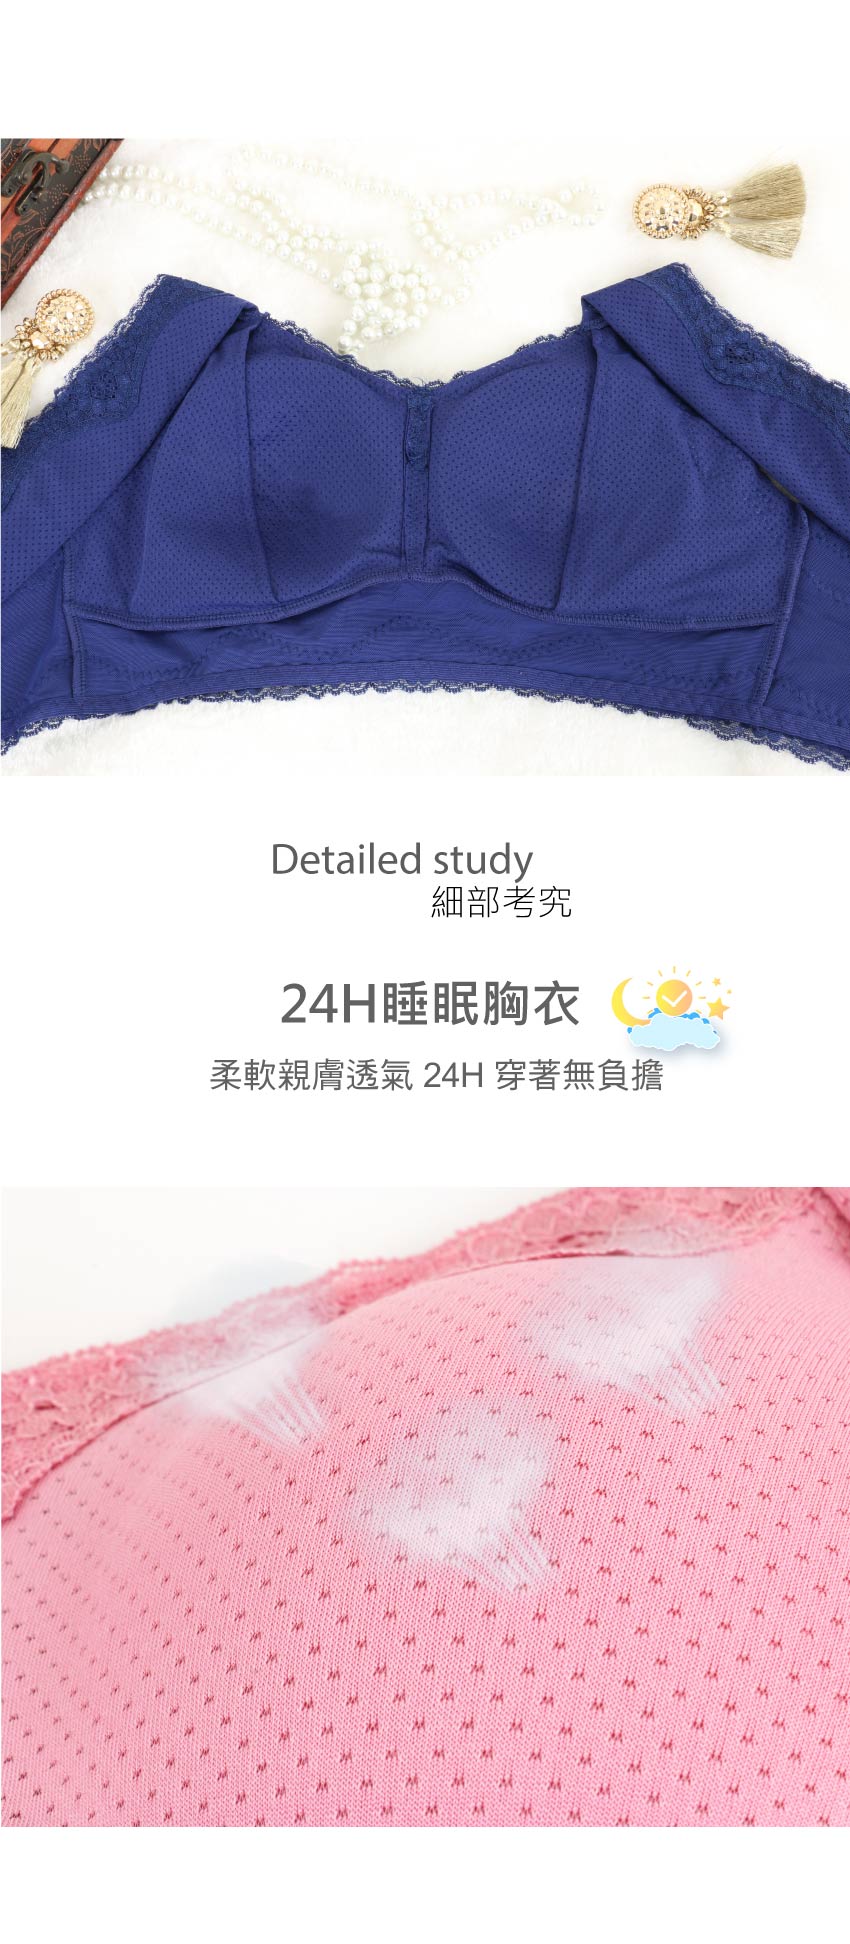 24H透氣睡眠胸衣(深藍)